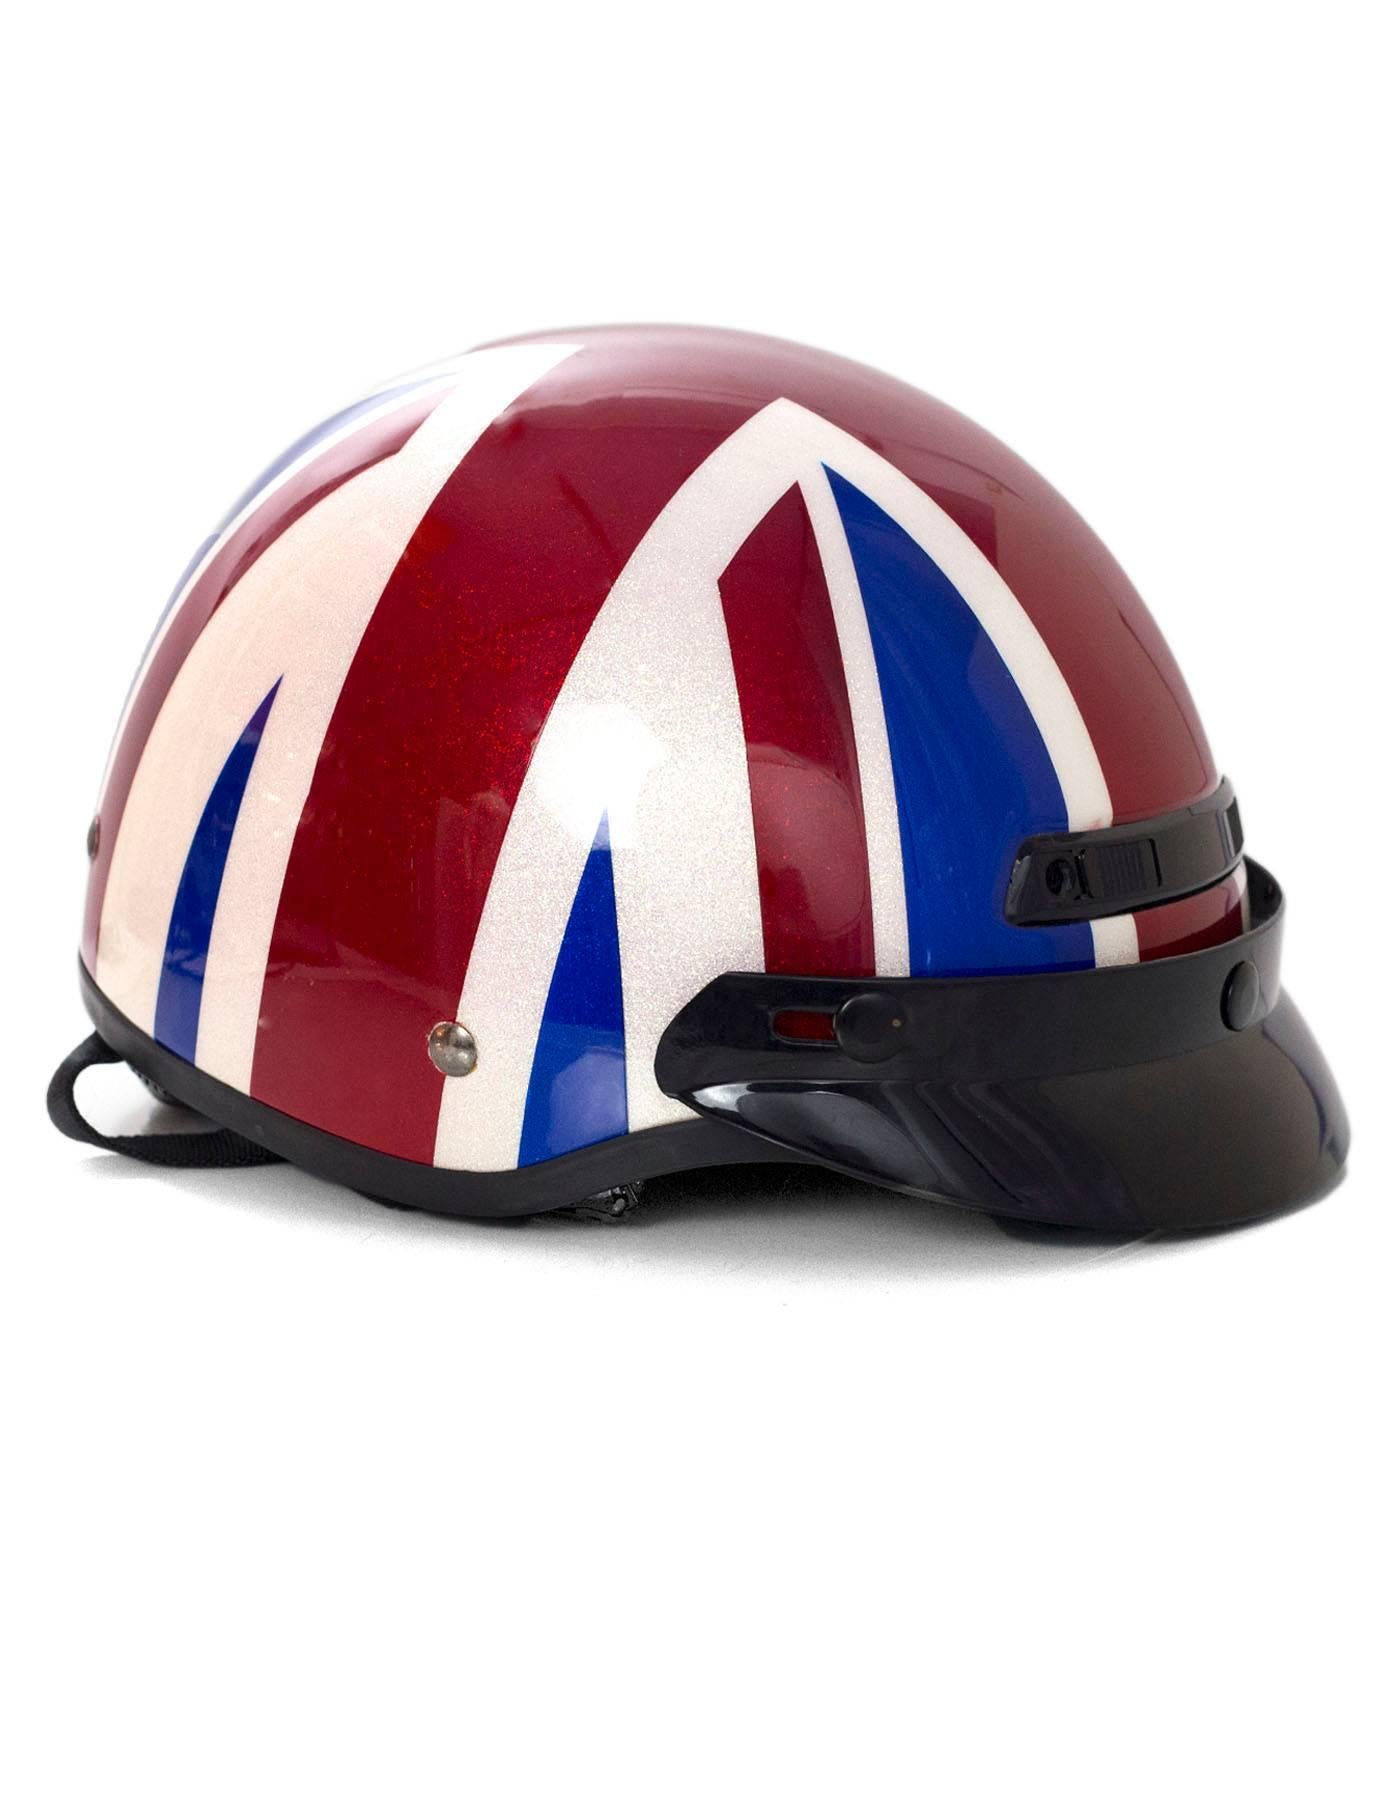 british flag helmet